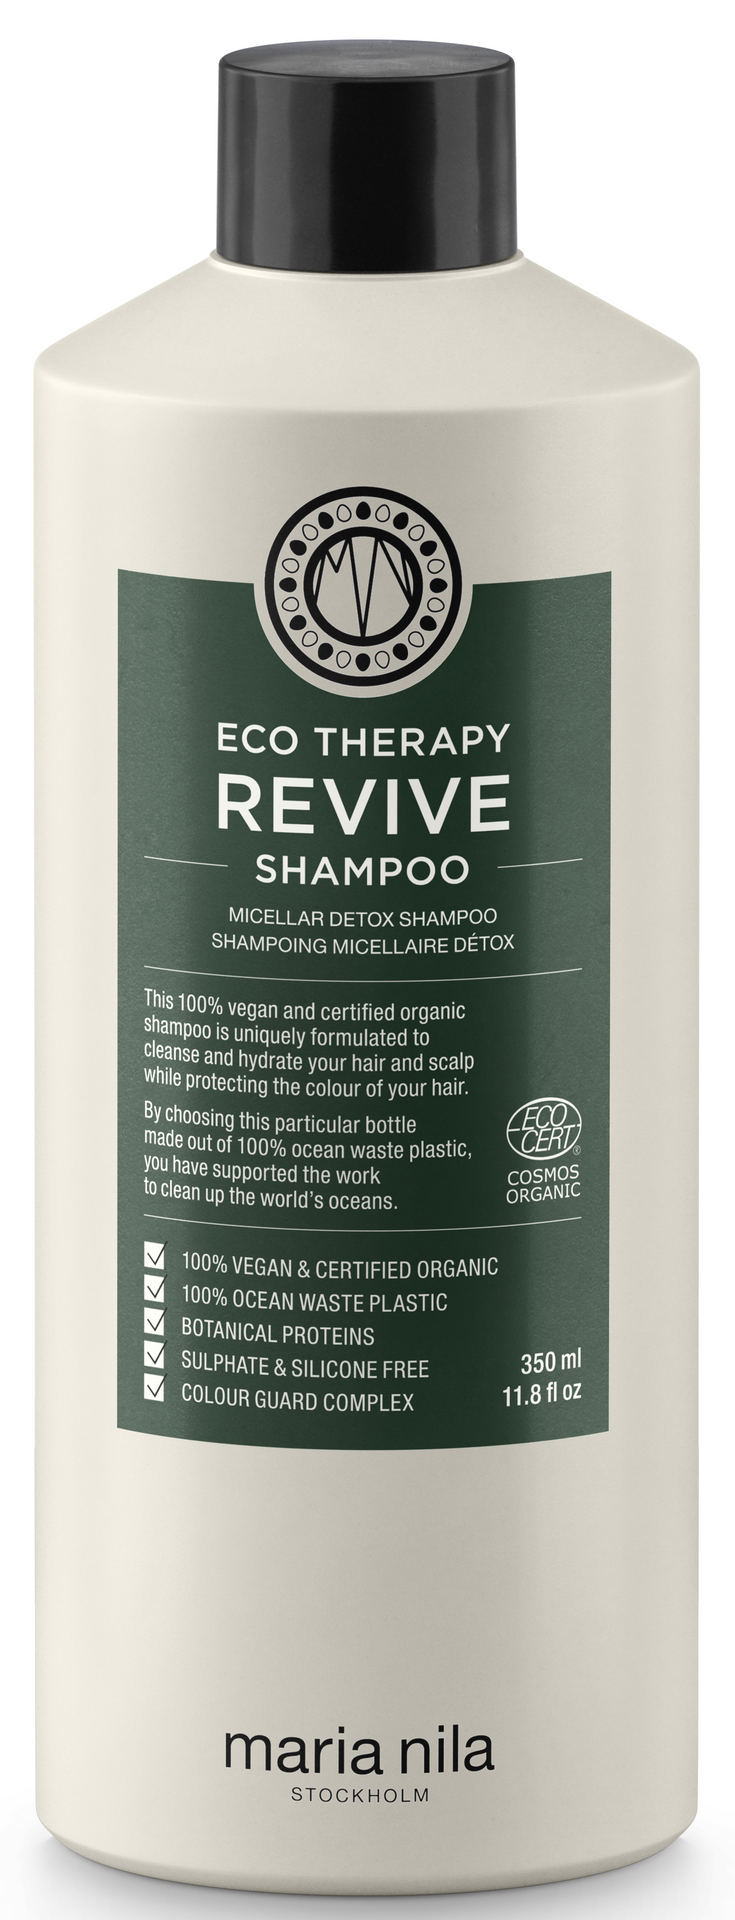 Maria Nila Maria Nila Eco Therapy Revive szampon rozmiar 350 ml MN-3660